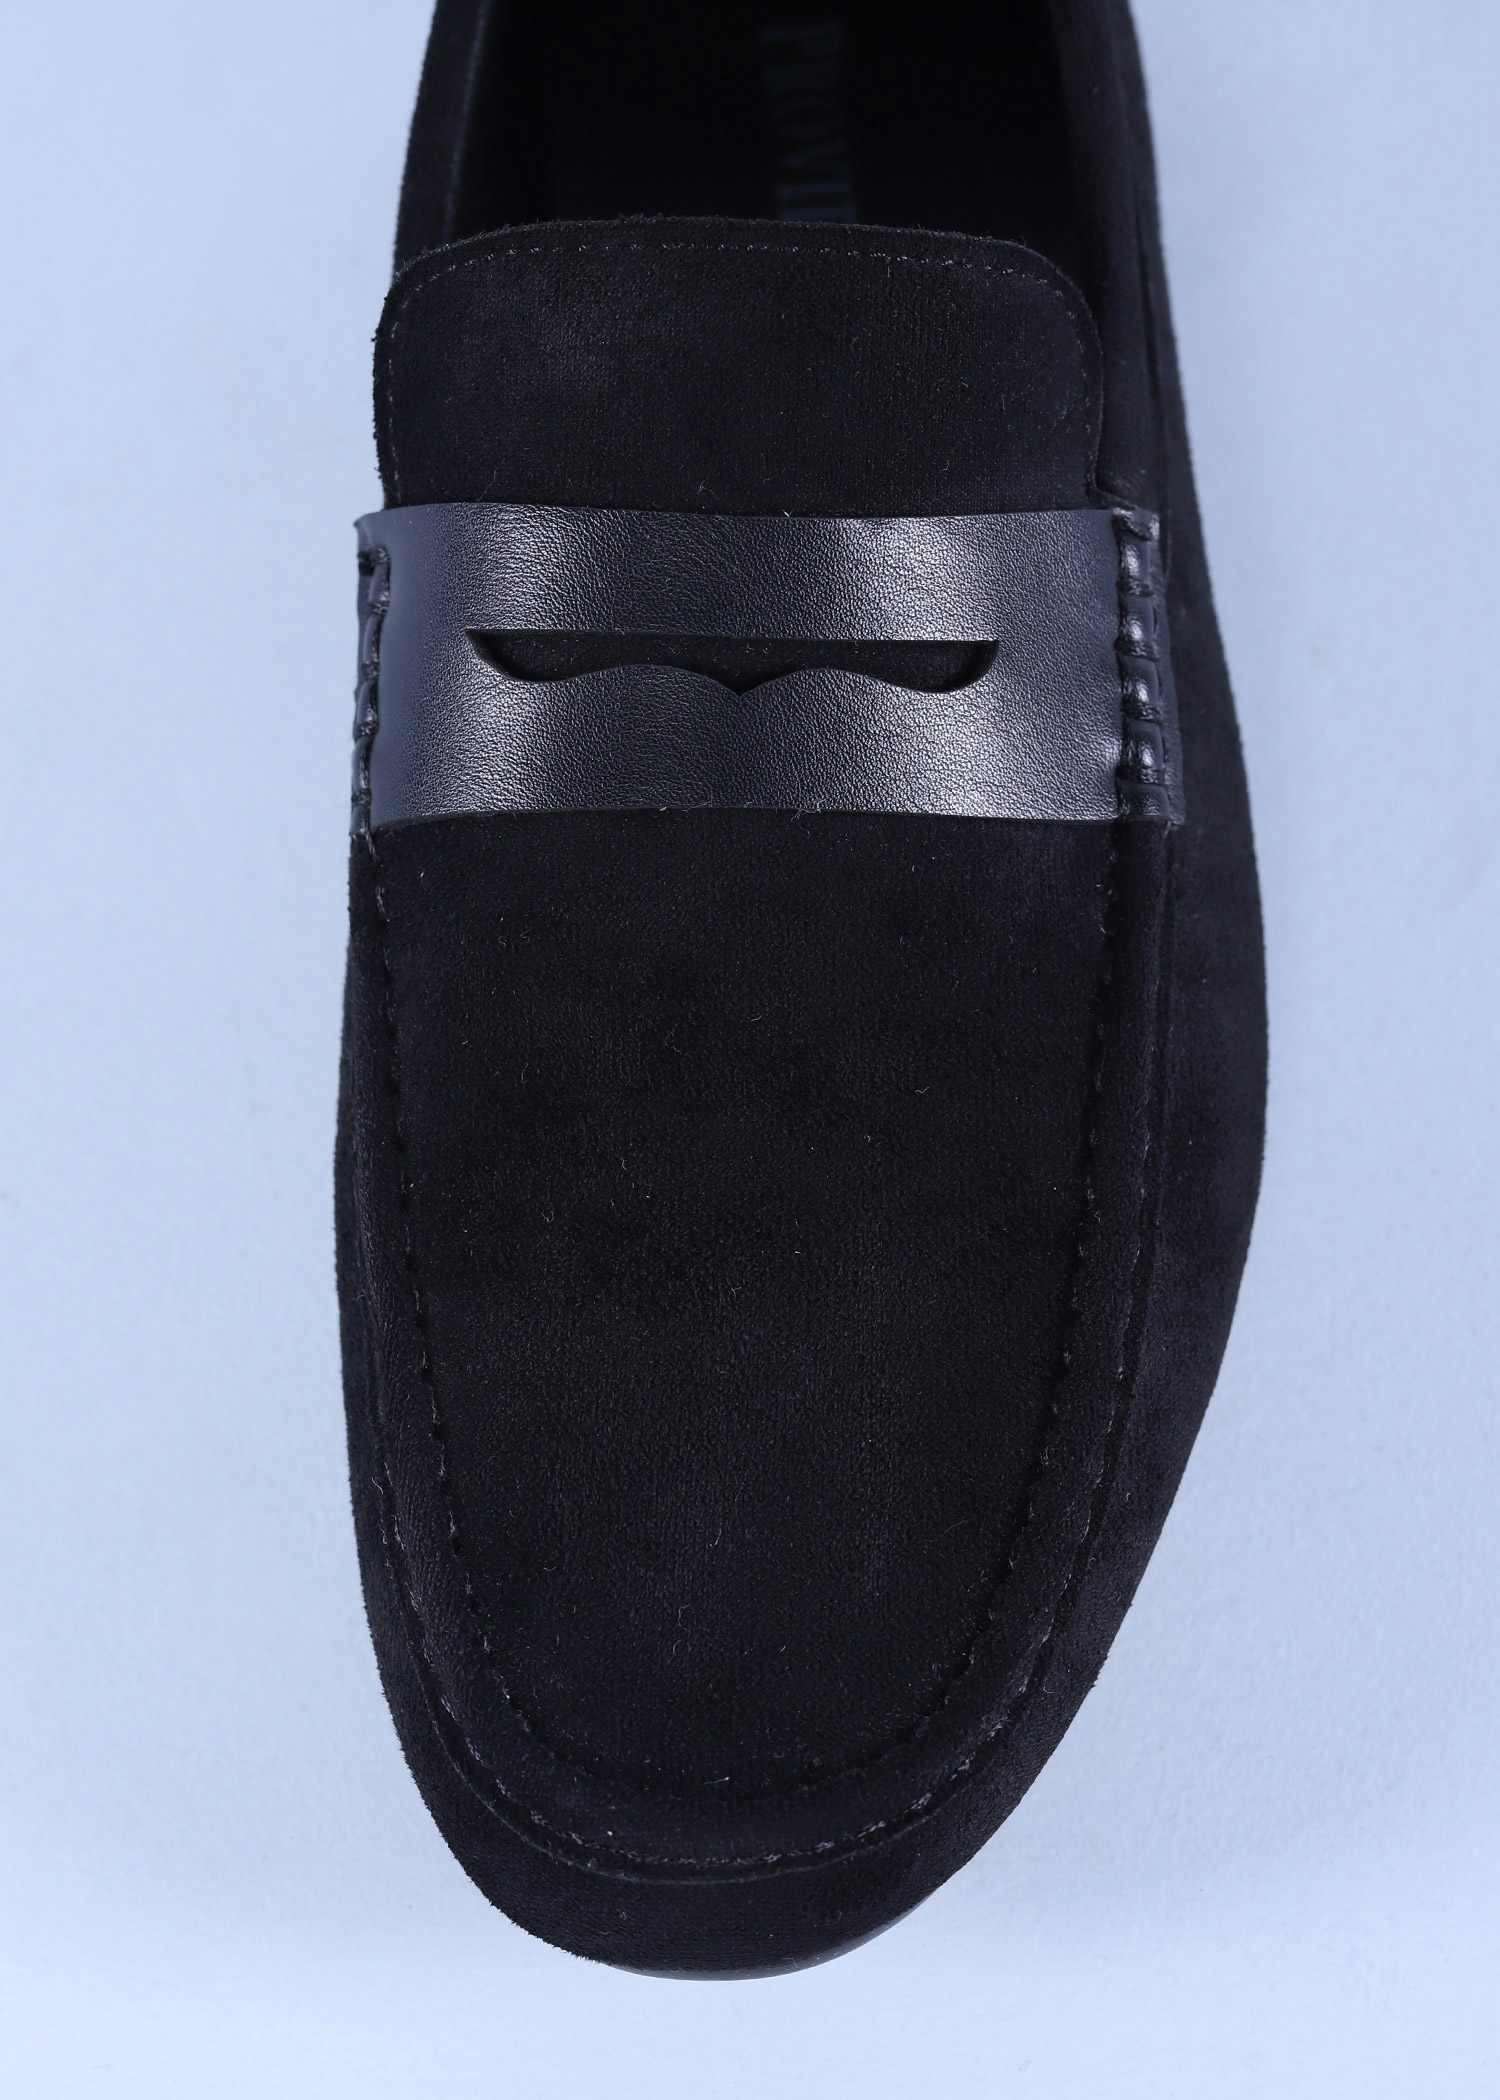 navia mens shoes black color top close